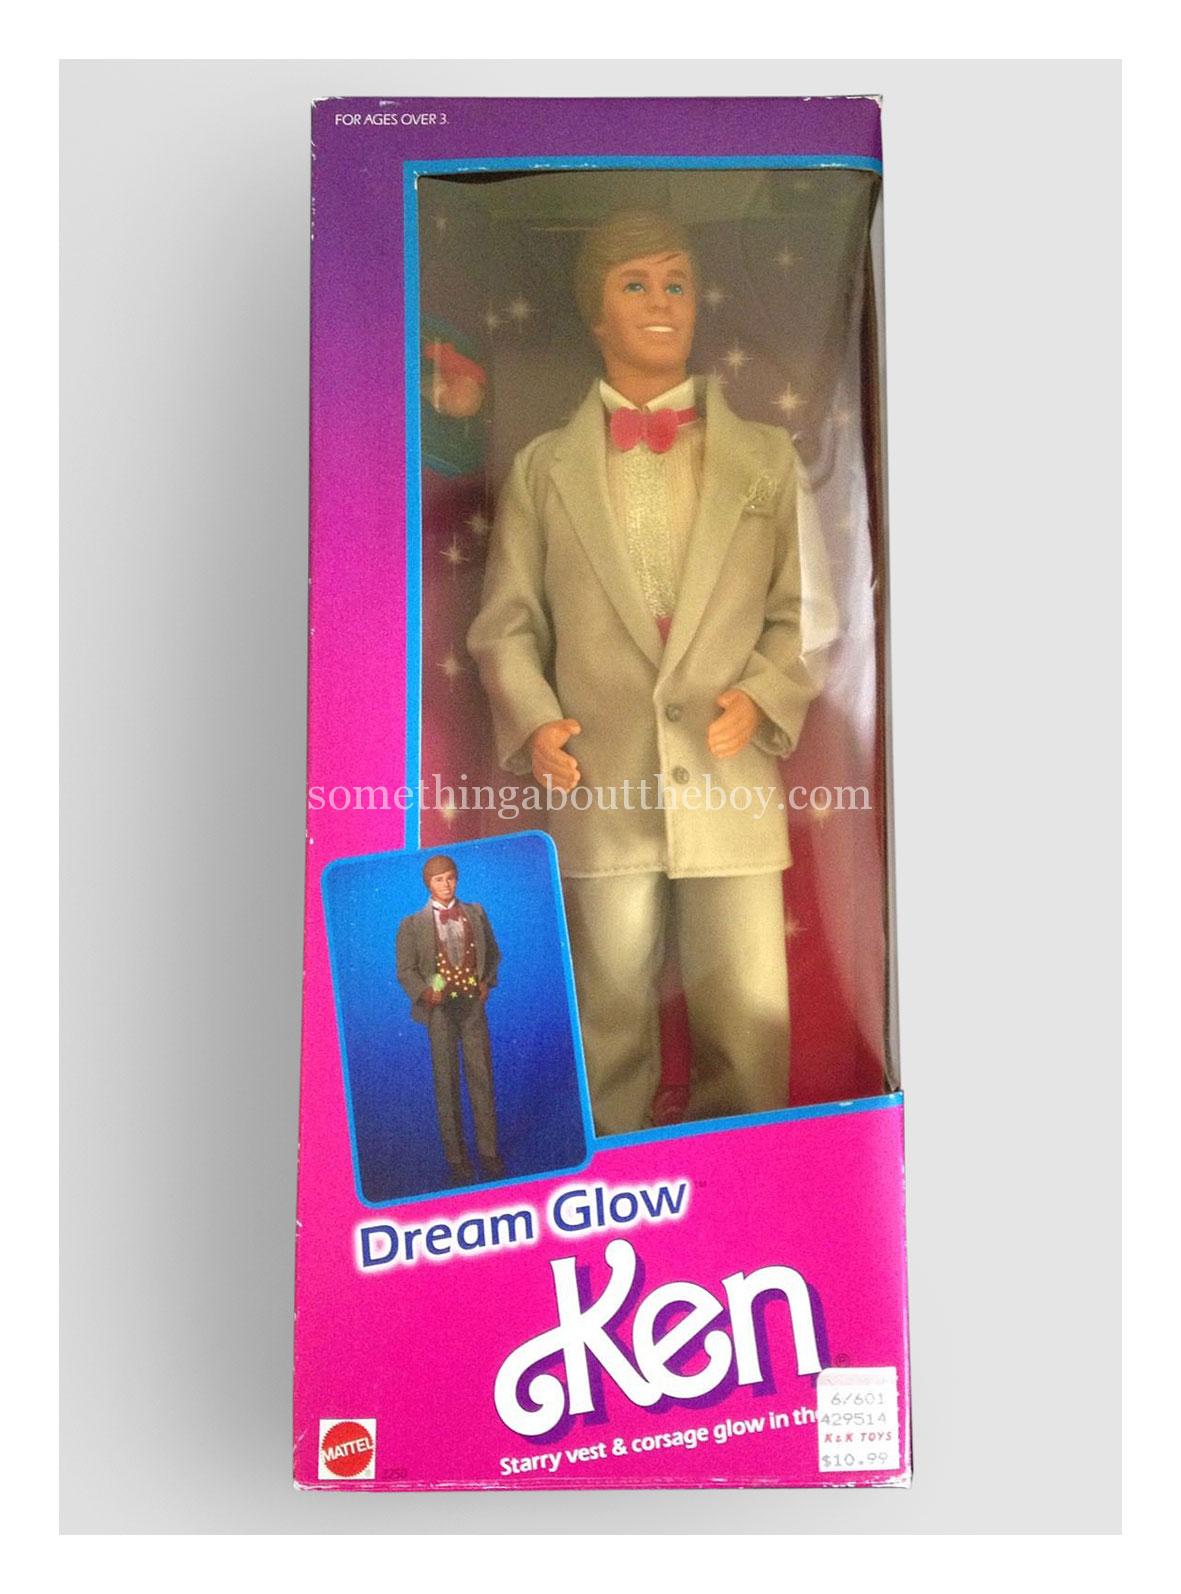 1986 #2250 Dream Glow Ken in original packaging